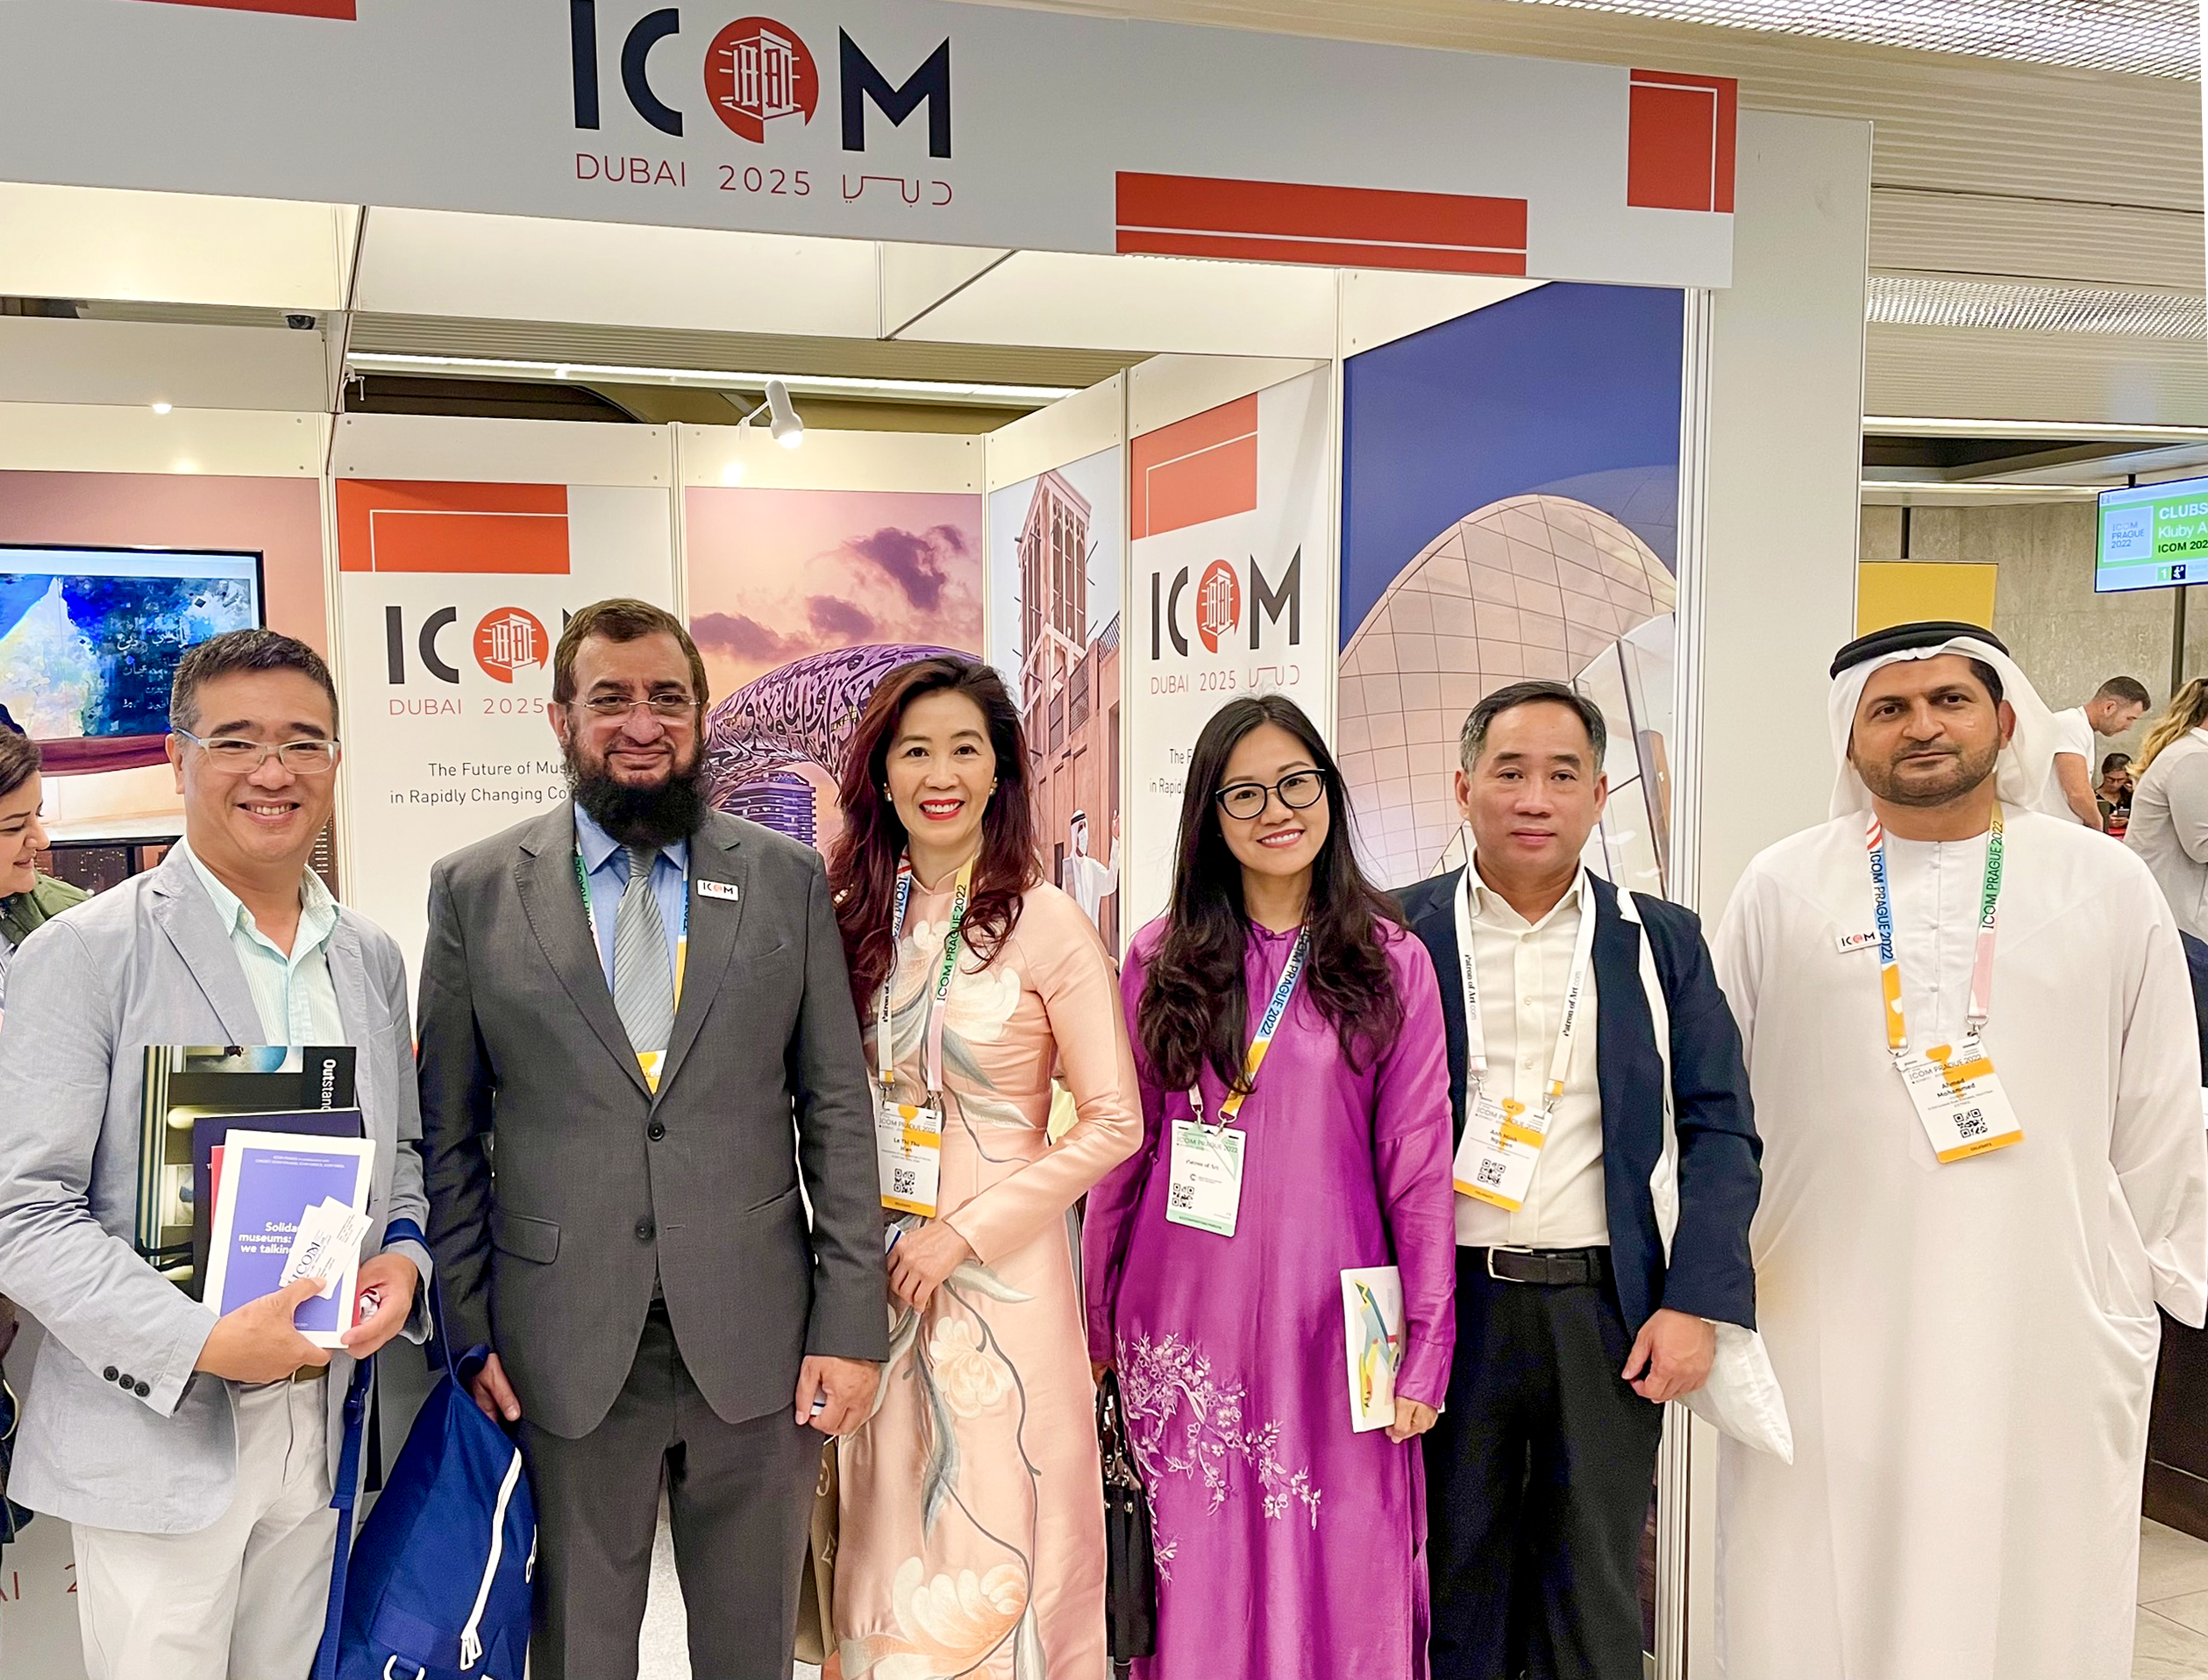 Đoàn Việt Nam gặp gỡ Chủ tịch ICOM UAE, nước chủ nhà của kỳ họp Đại hội đồng tới - ICOM Dubai 2025